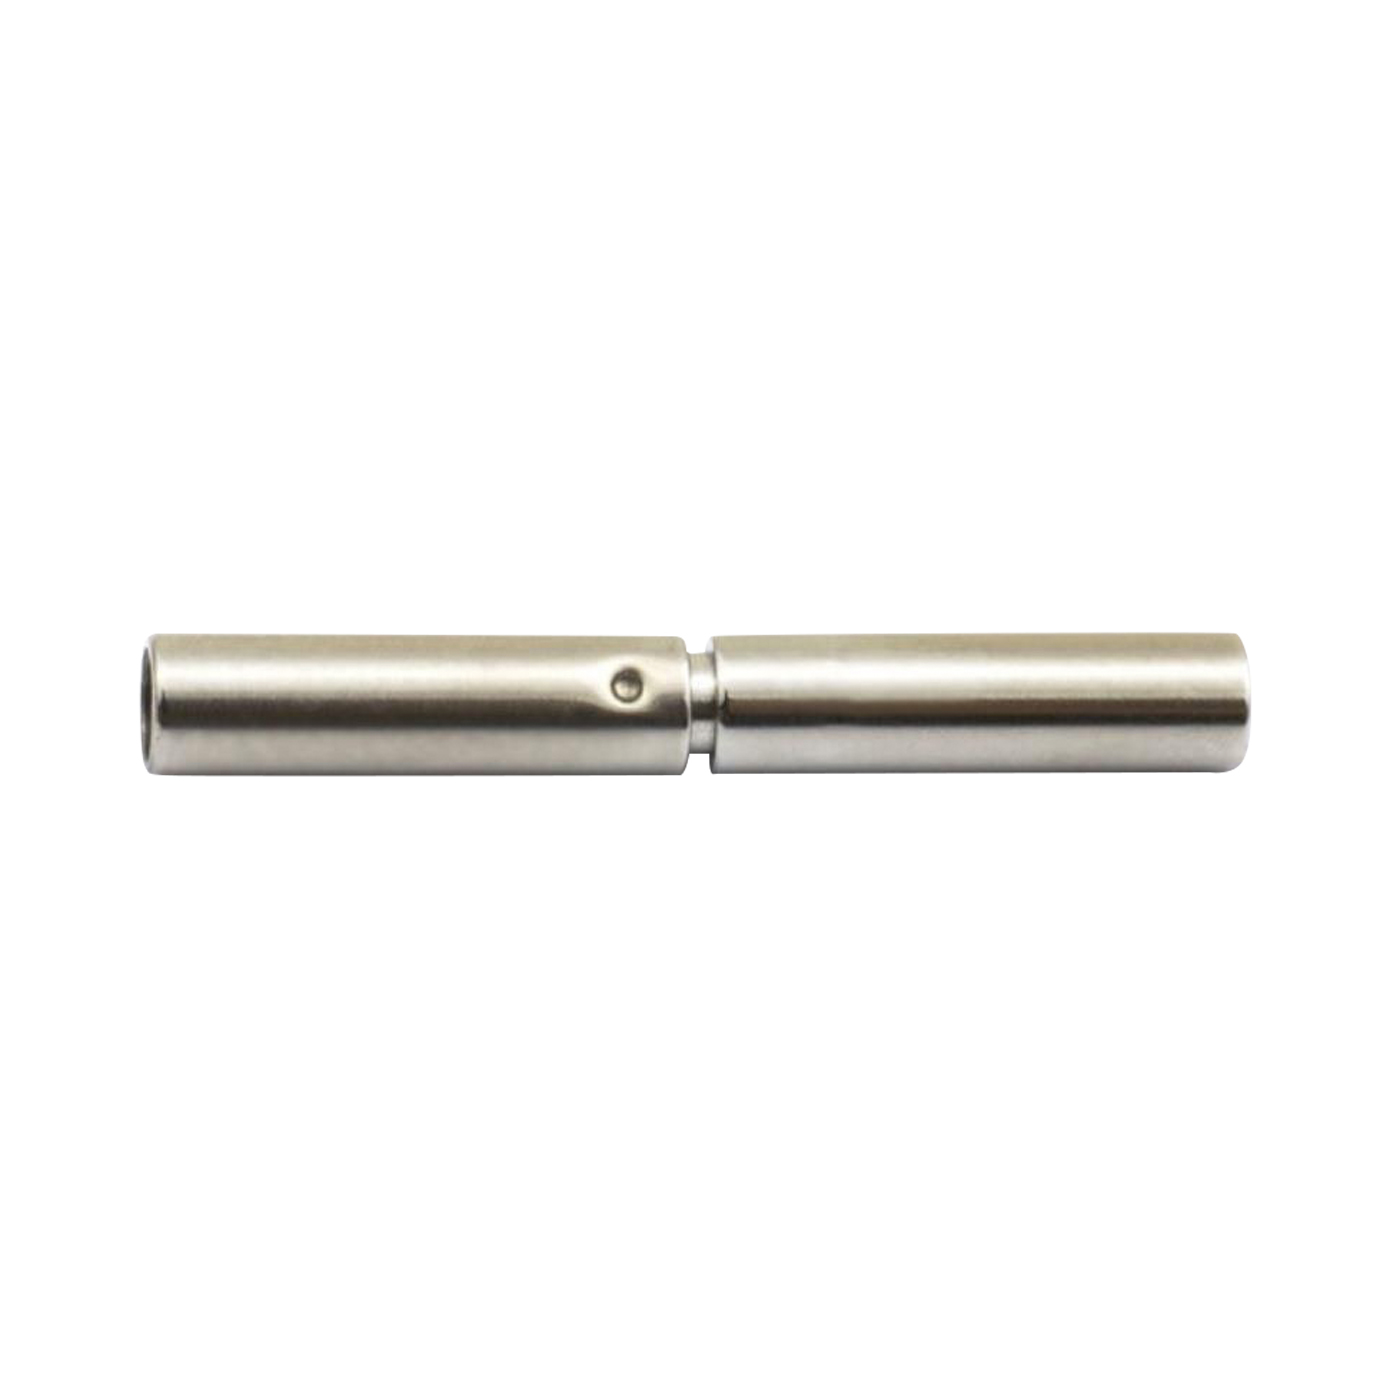 Steel Spiral Circlet, ø 1.00 mm, 45 cm - 1 piece